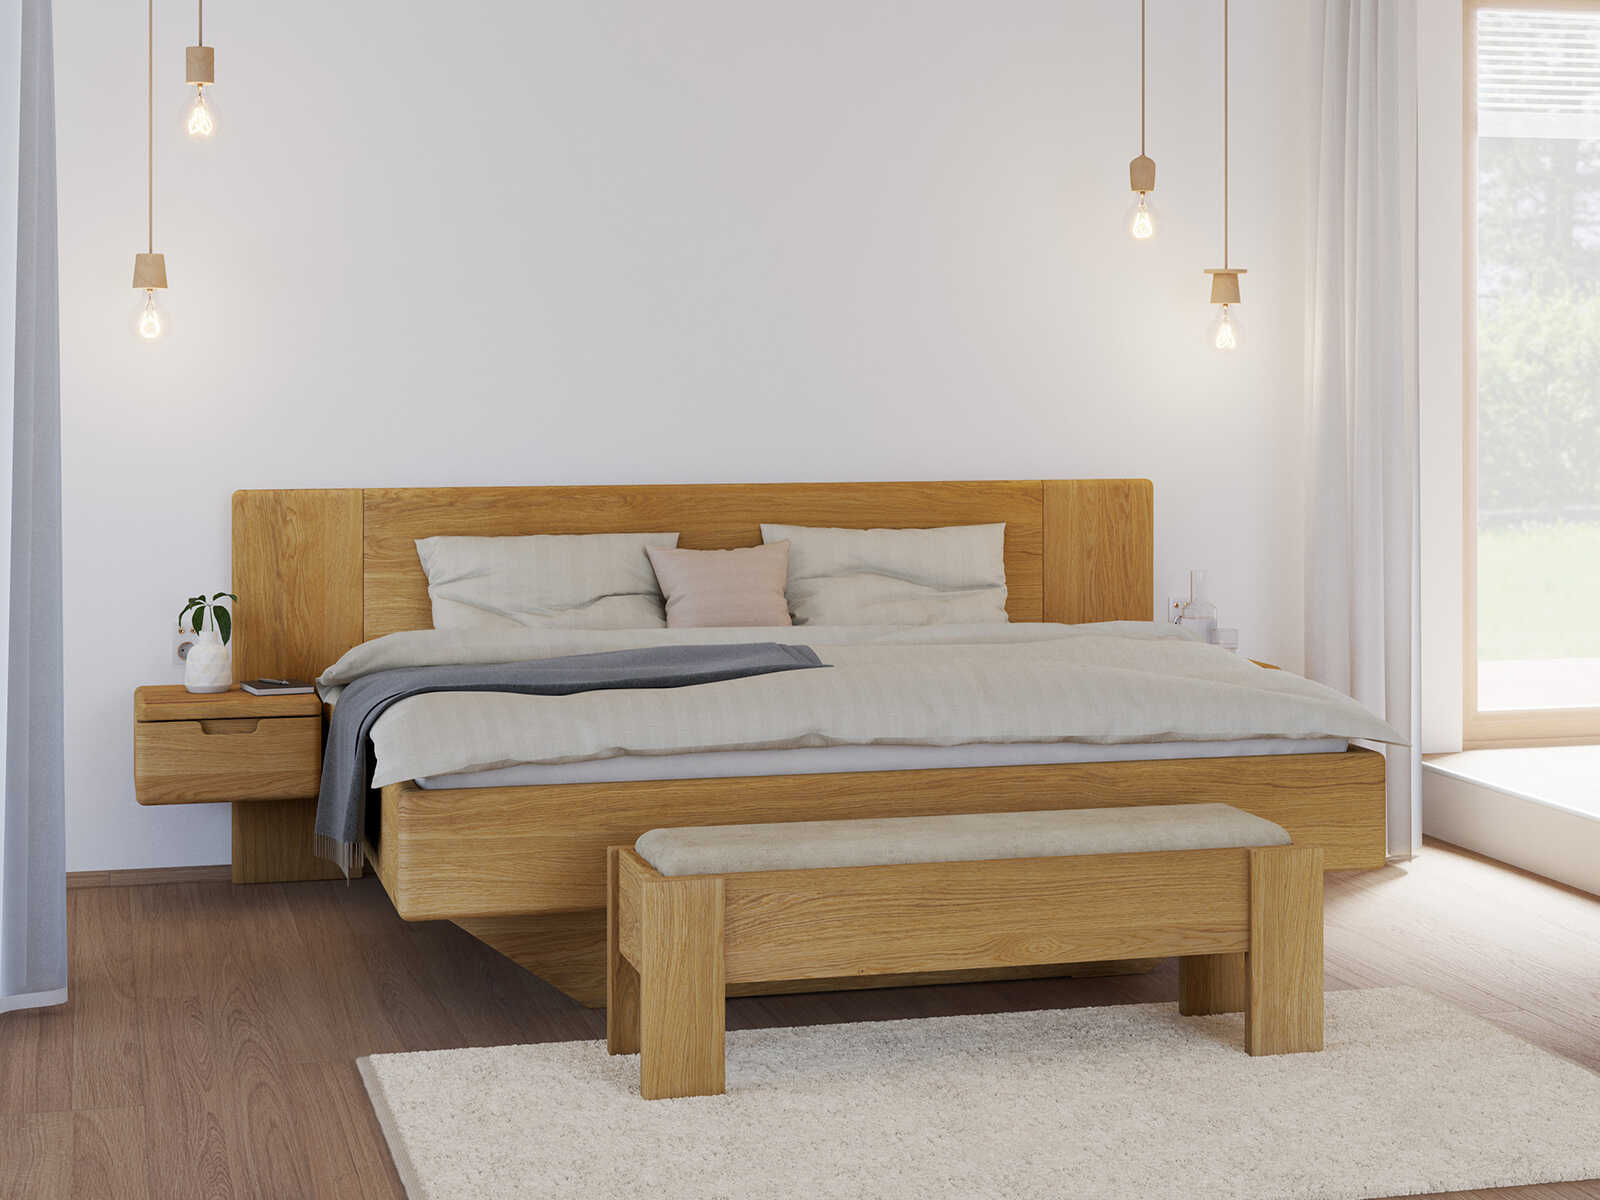 Bett „Leonie“ aus Eiche in 180 x 200 cm, mit zwei Nachttische (40 cm breit)